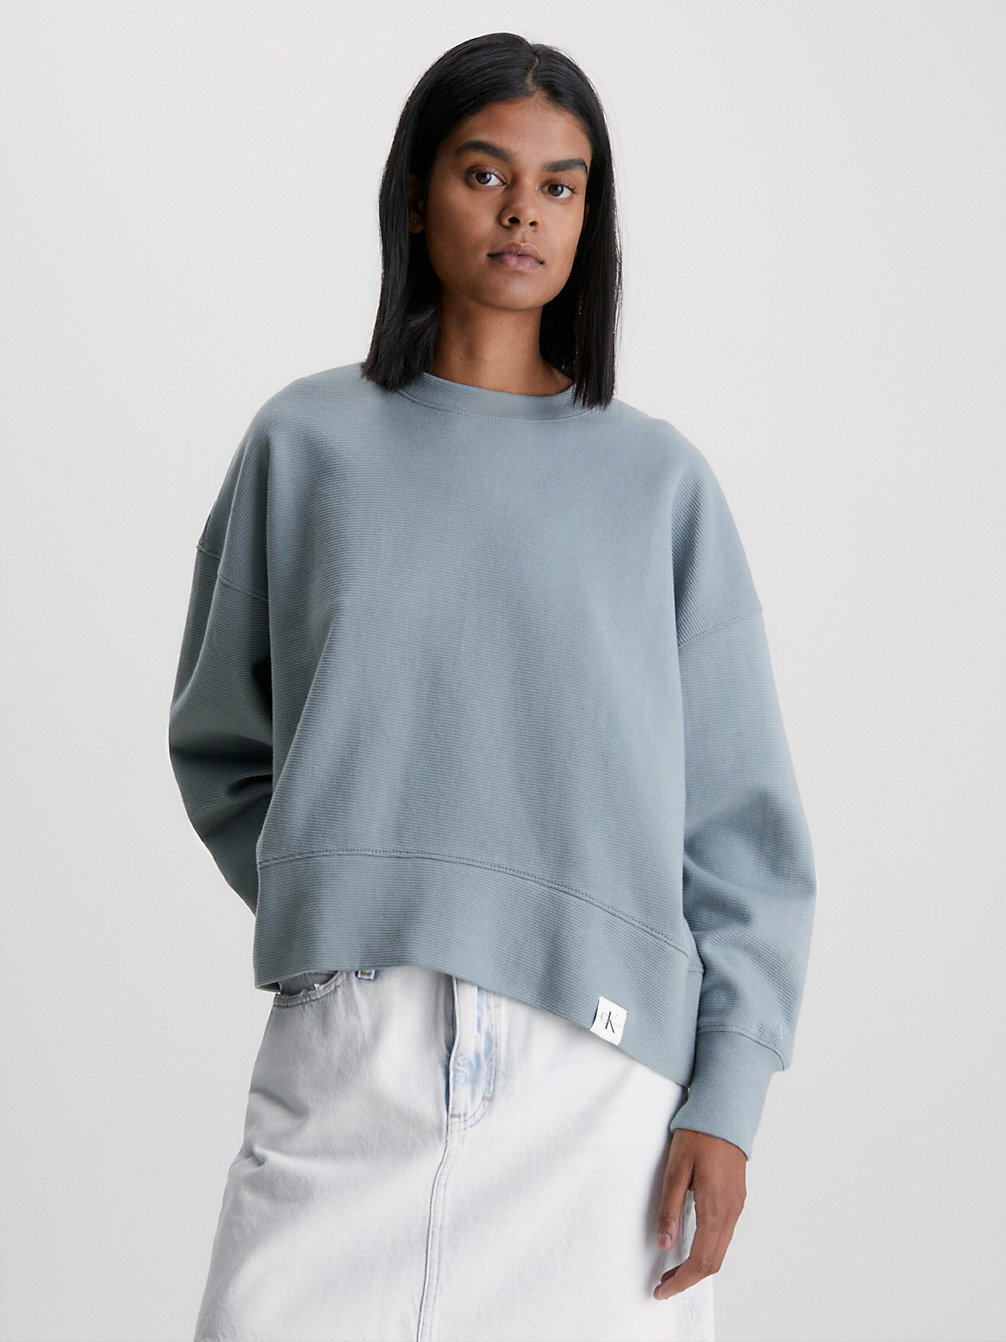 OVERCAST GREY Lässige, Gerippte Ottoman Sweatshirt undefined Damen Calvin Klein